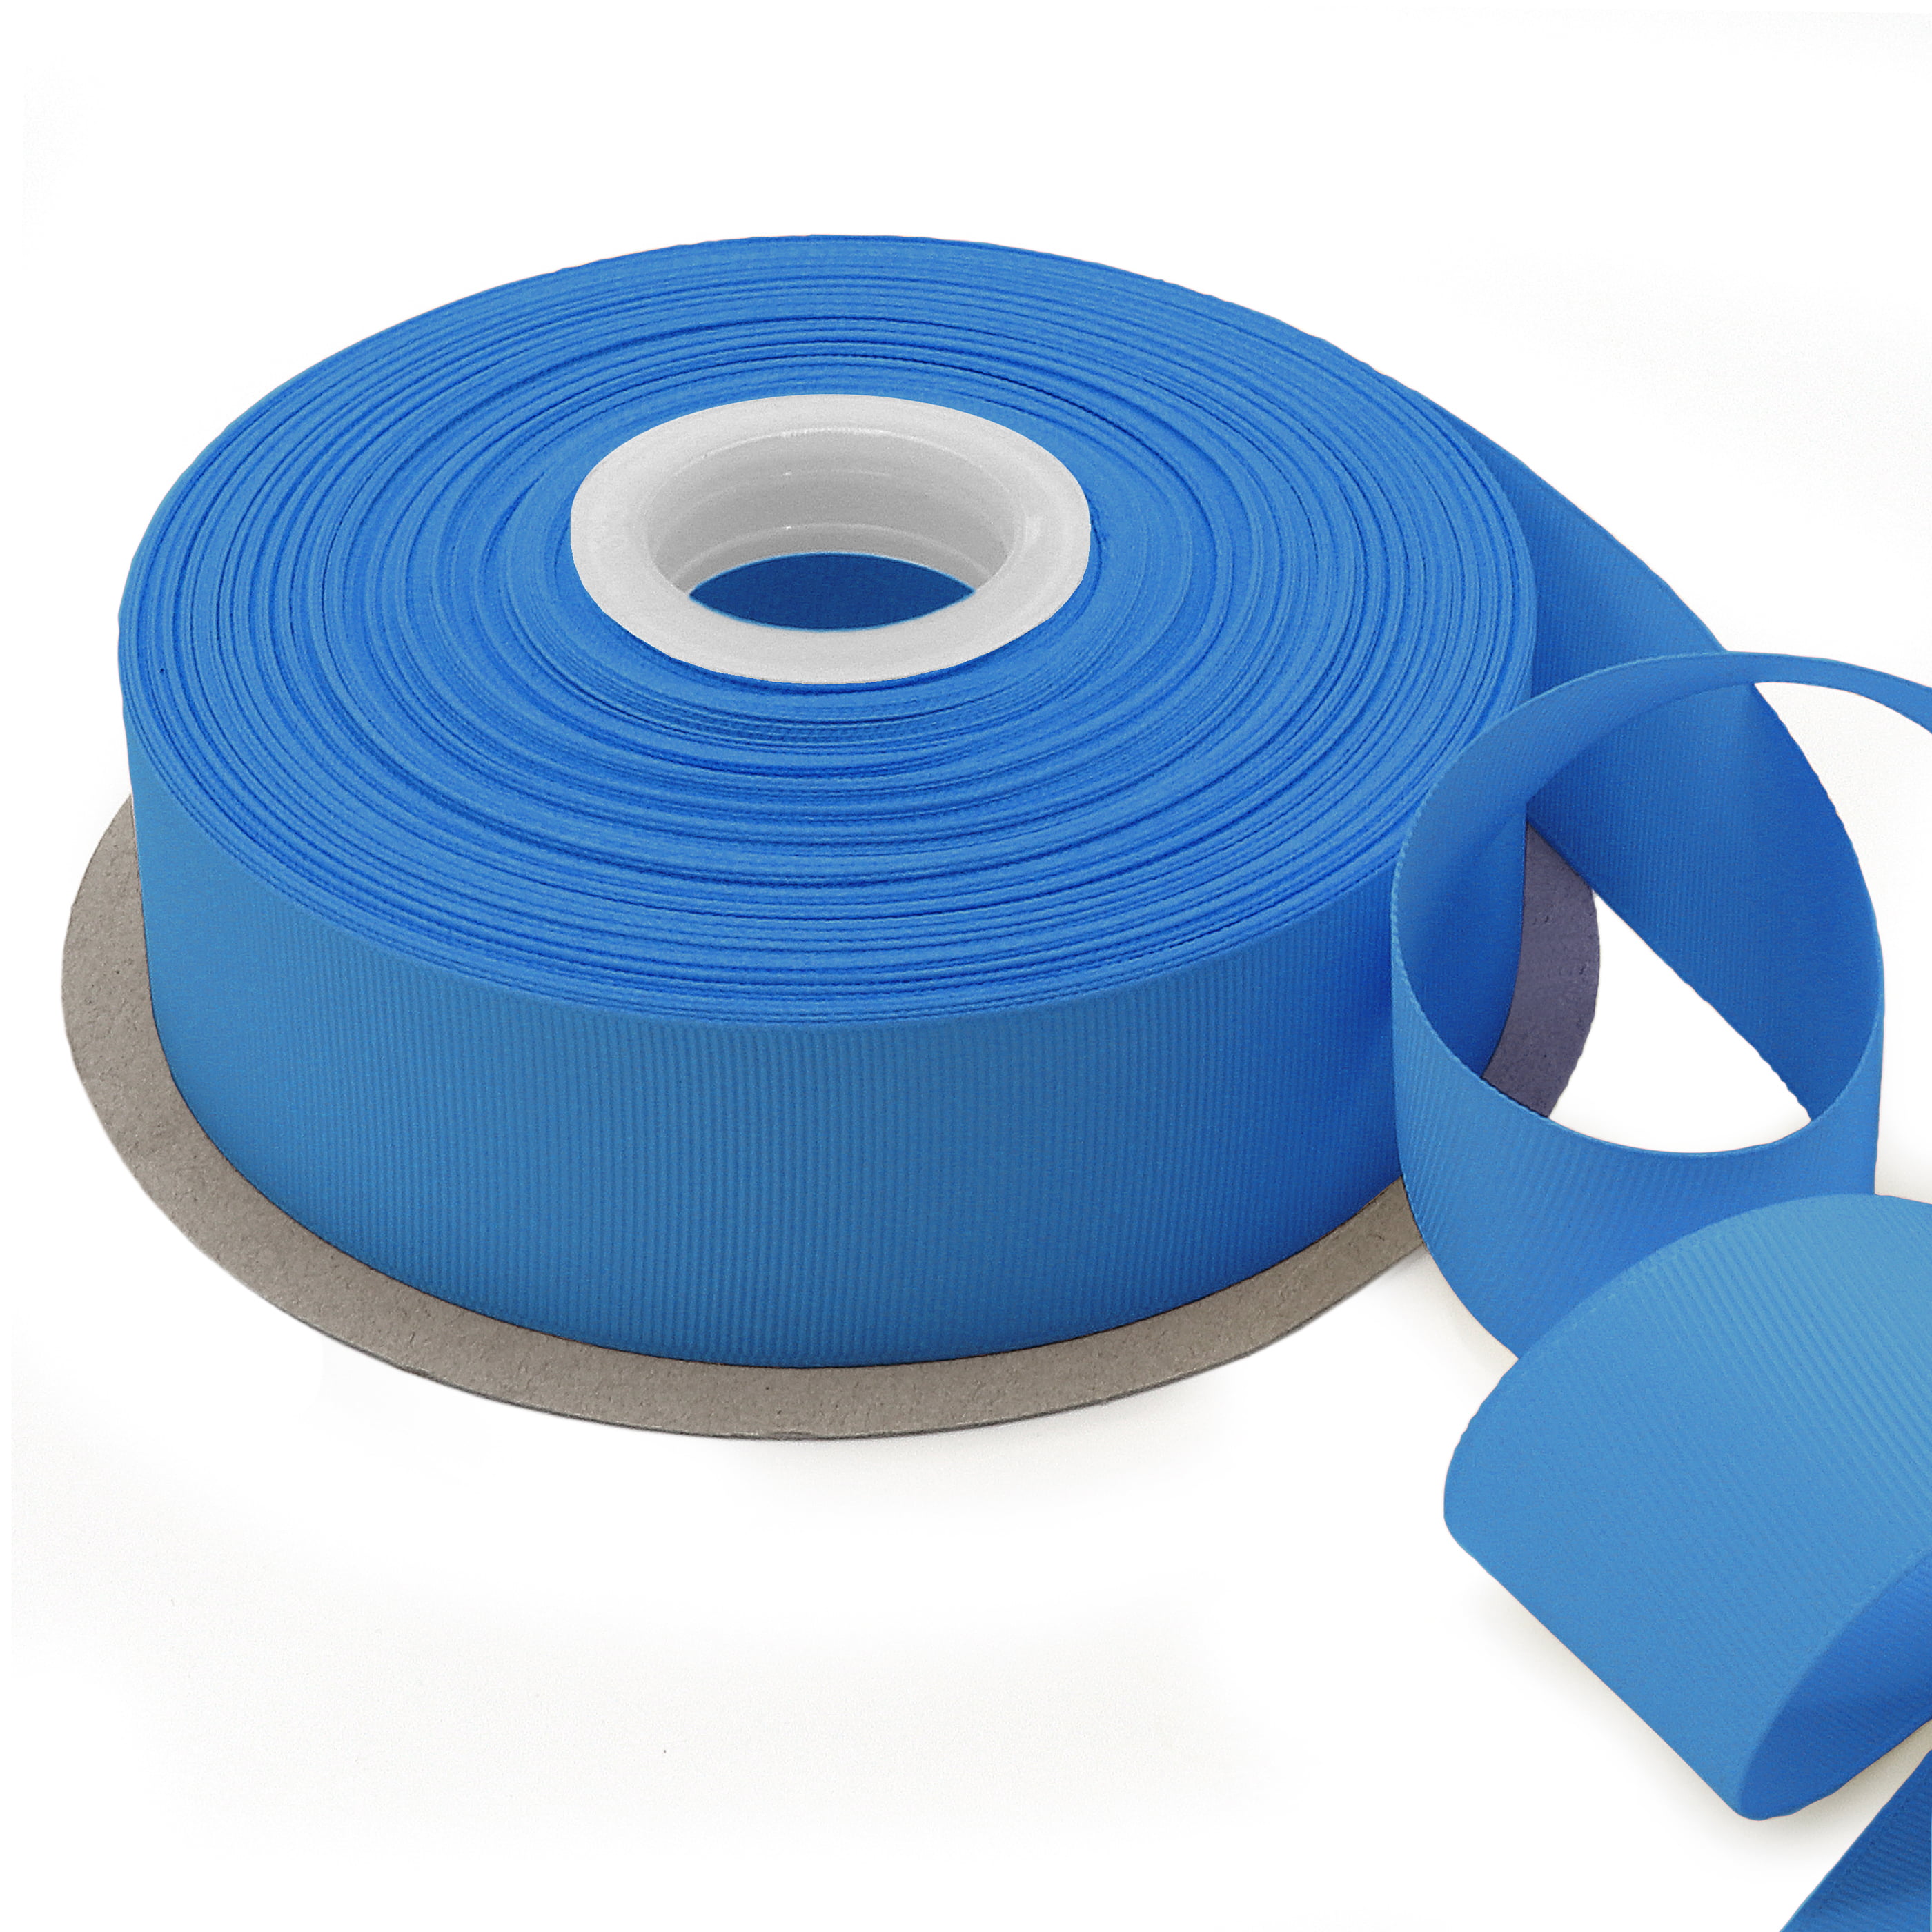 Gwen Studios 5/8 inch Grosgrain Fabric Ribbon, 100 Yards, Light Blue, Size: 5/8 inch x 100 yds